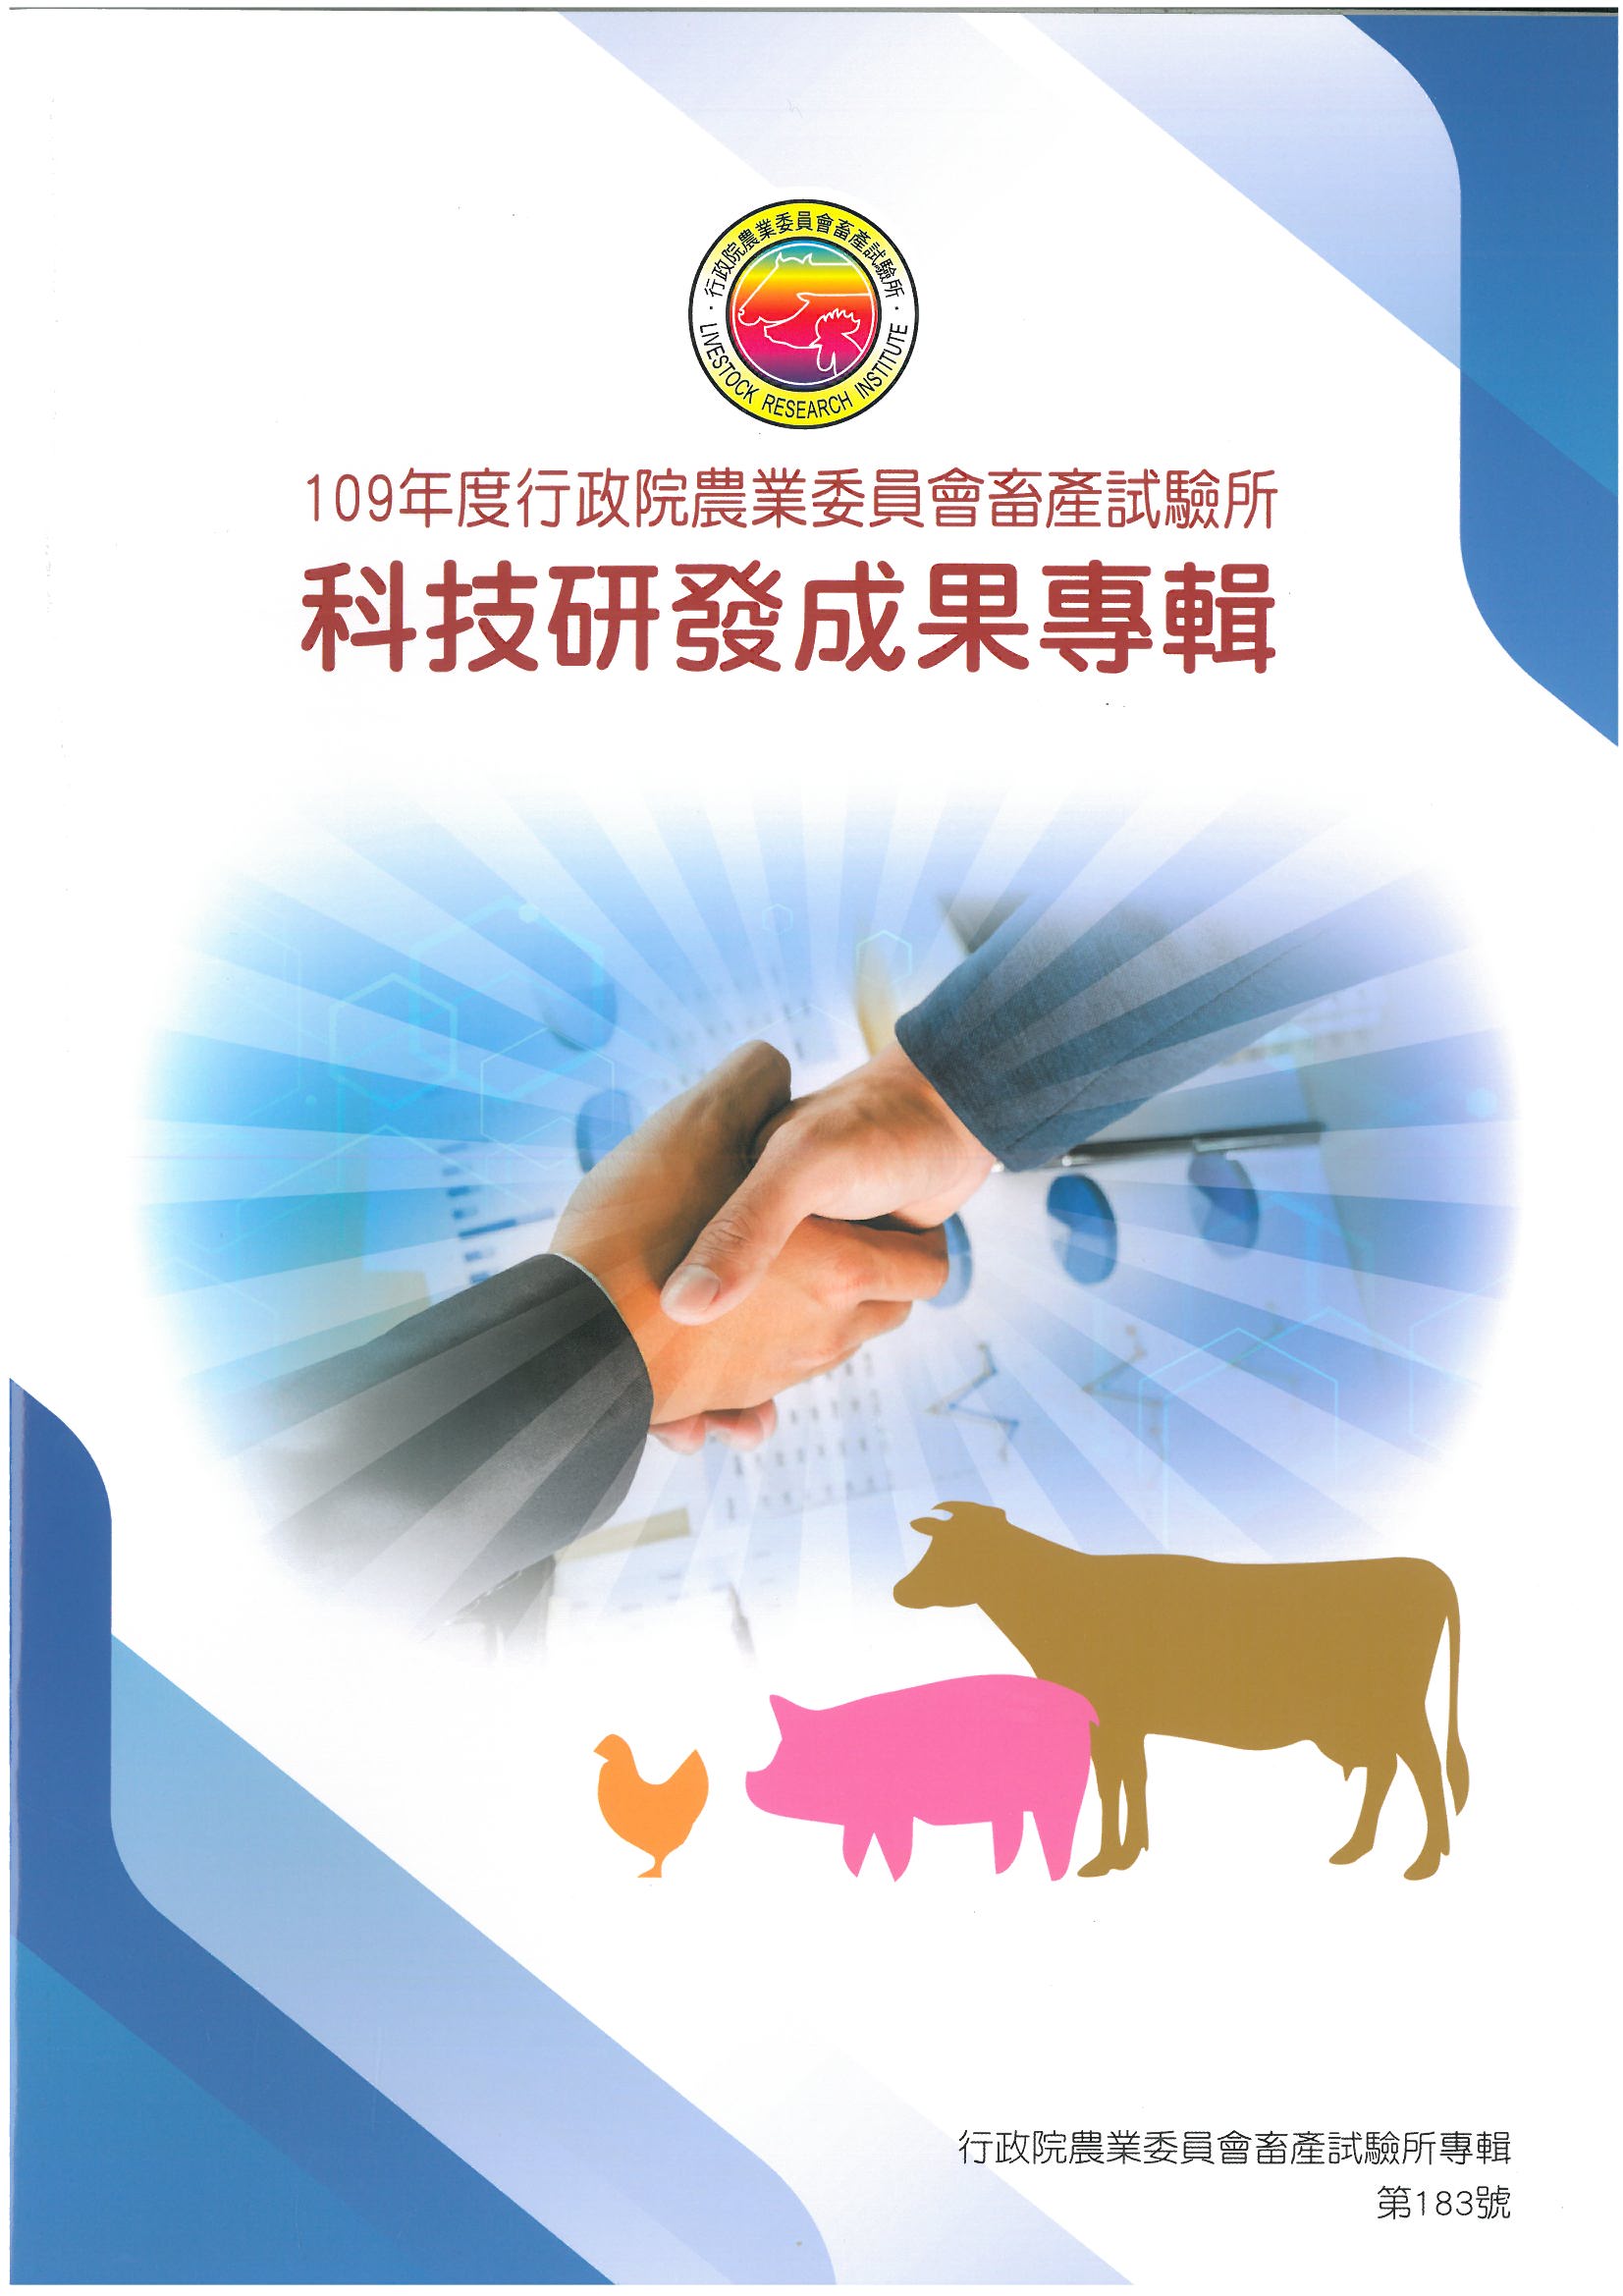 109年度行政院農業委員會畜產試驗所科技研發成果專輯